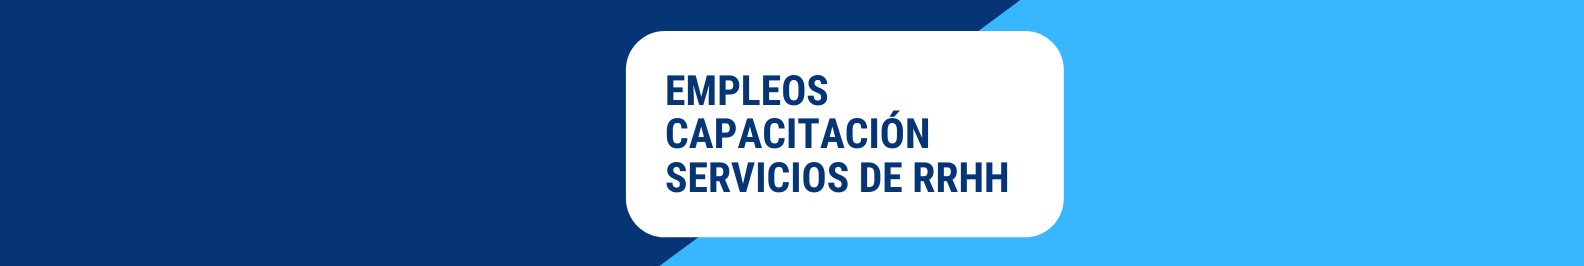 Amia Servicios de Empleo background